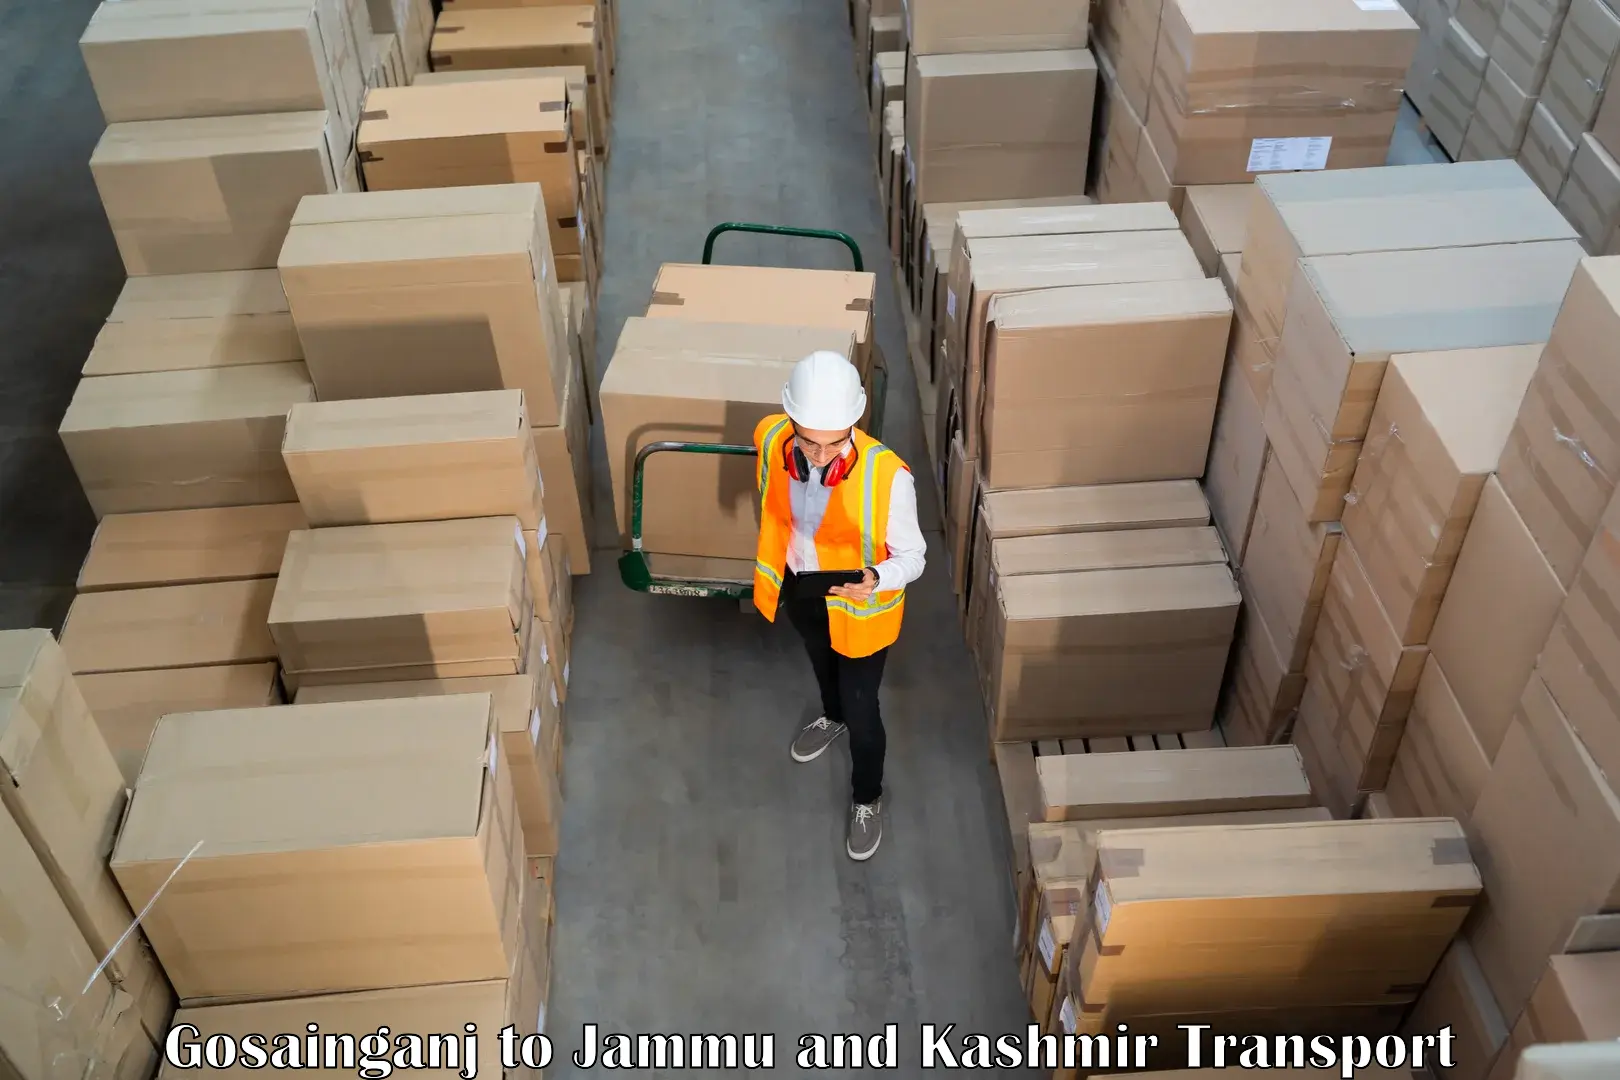 Land transport services Gosainganj to Jammu and Kashmir